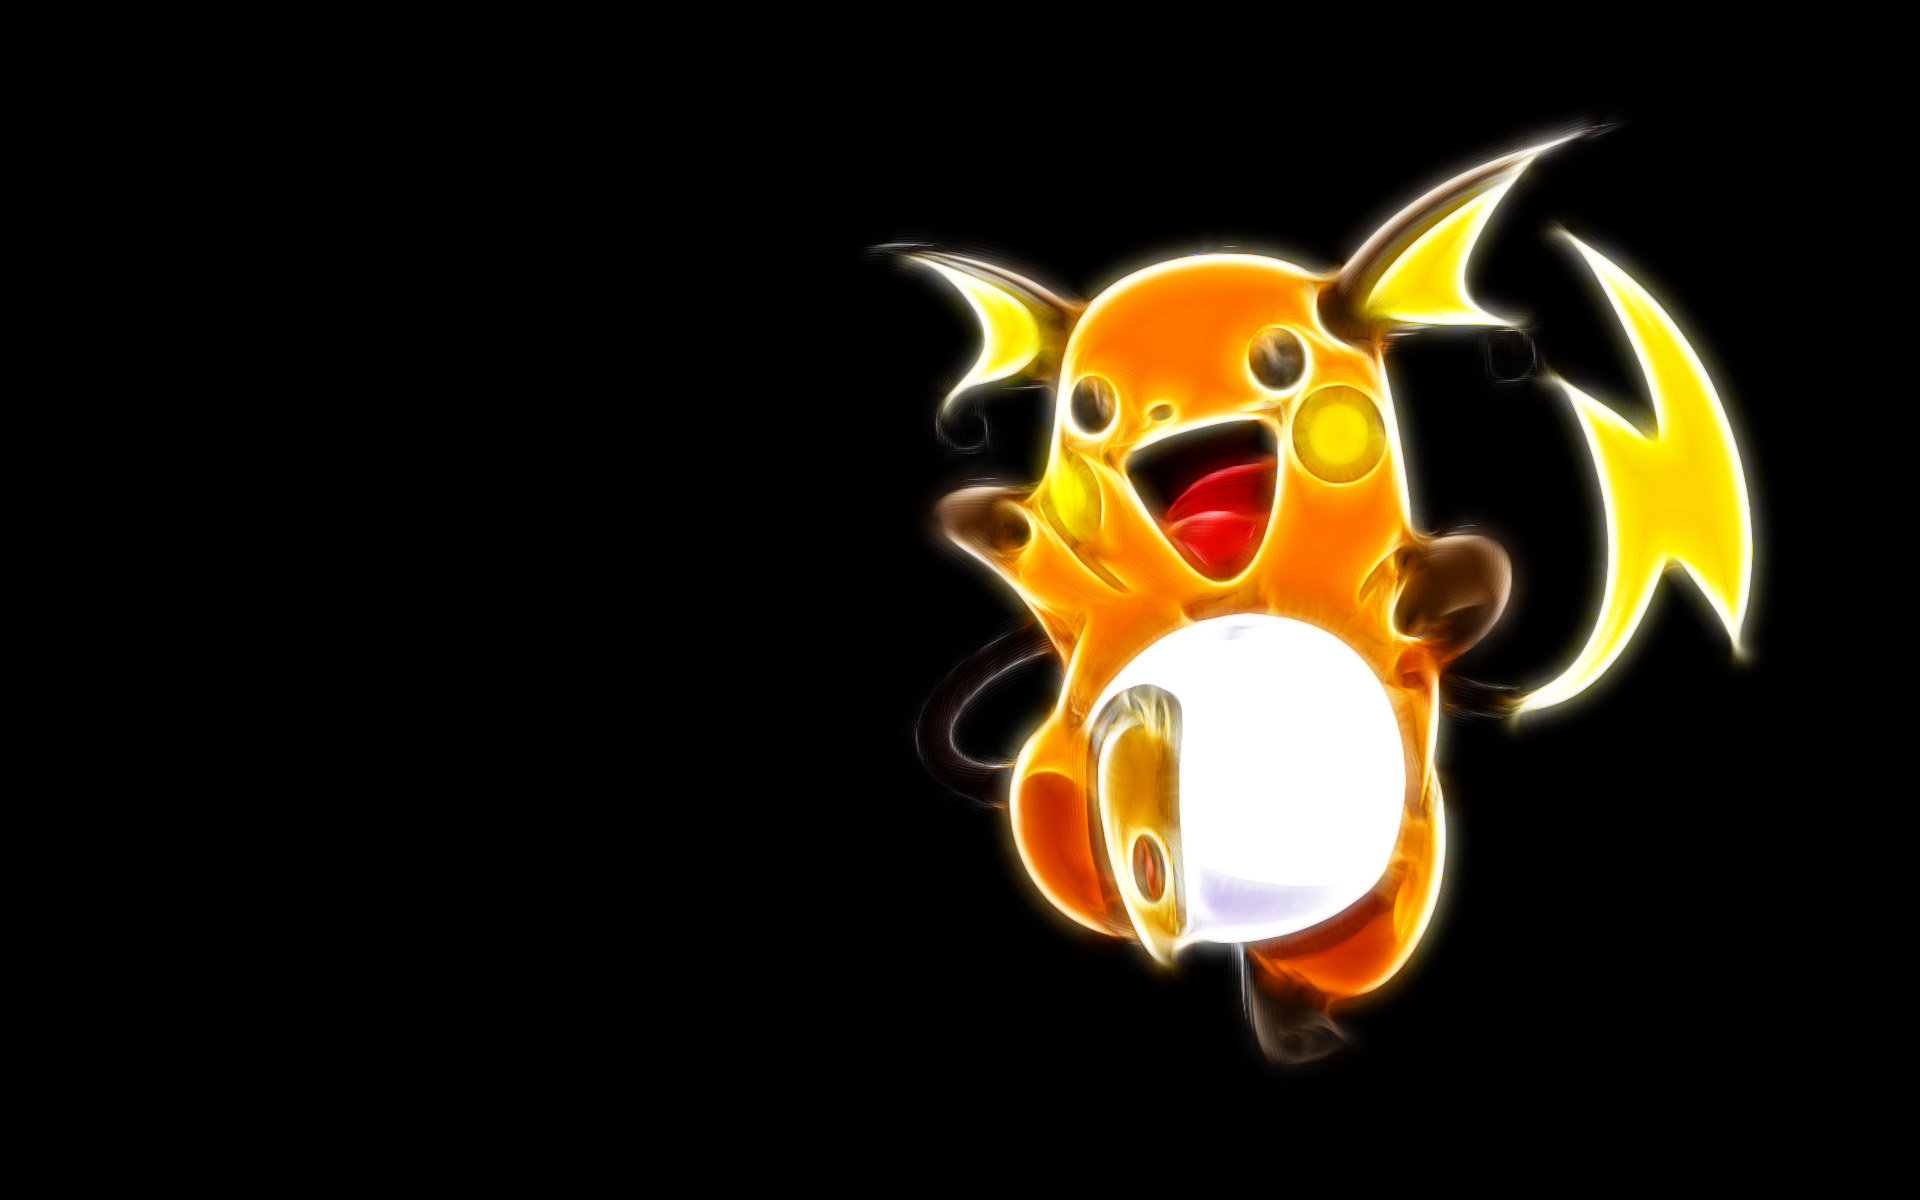 Free Raichu (Pokemon) high quality wallpaper ID:279308 for hd 1920x1200 PC